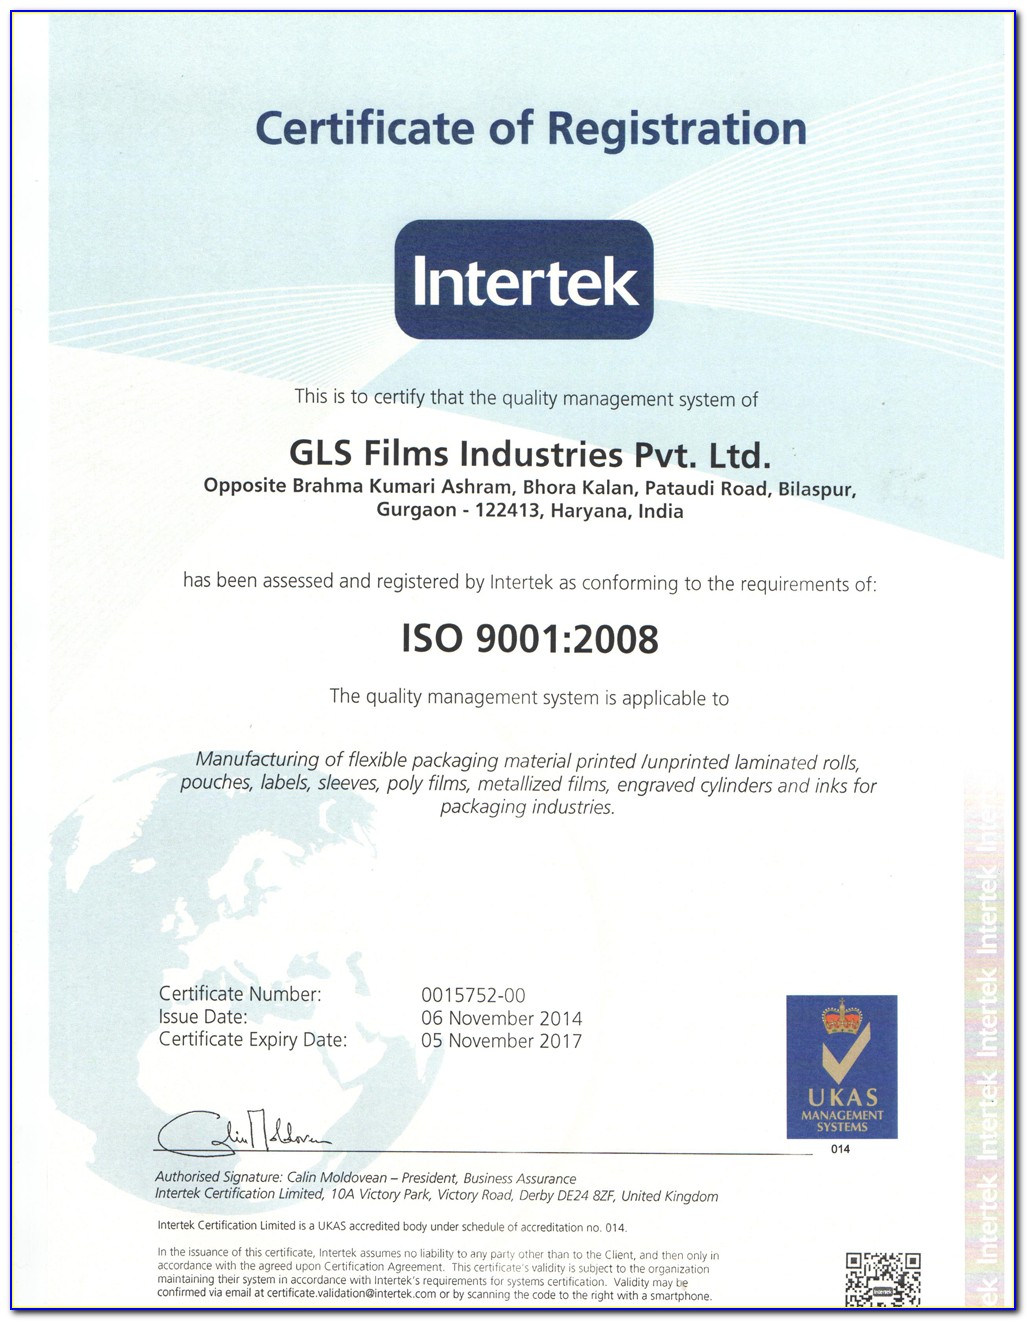 Intertek Testing & Certification Ltd